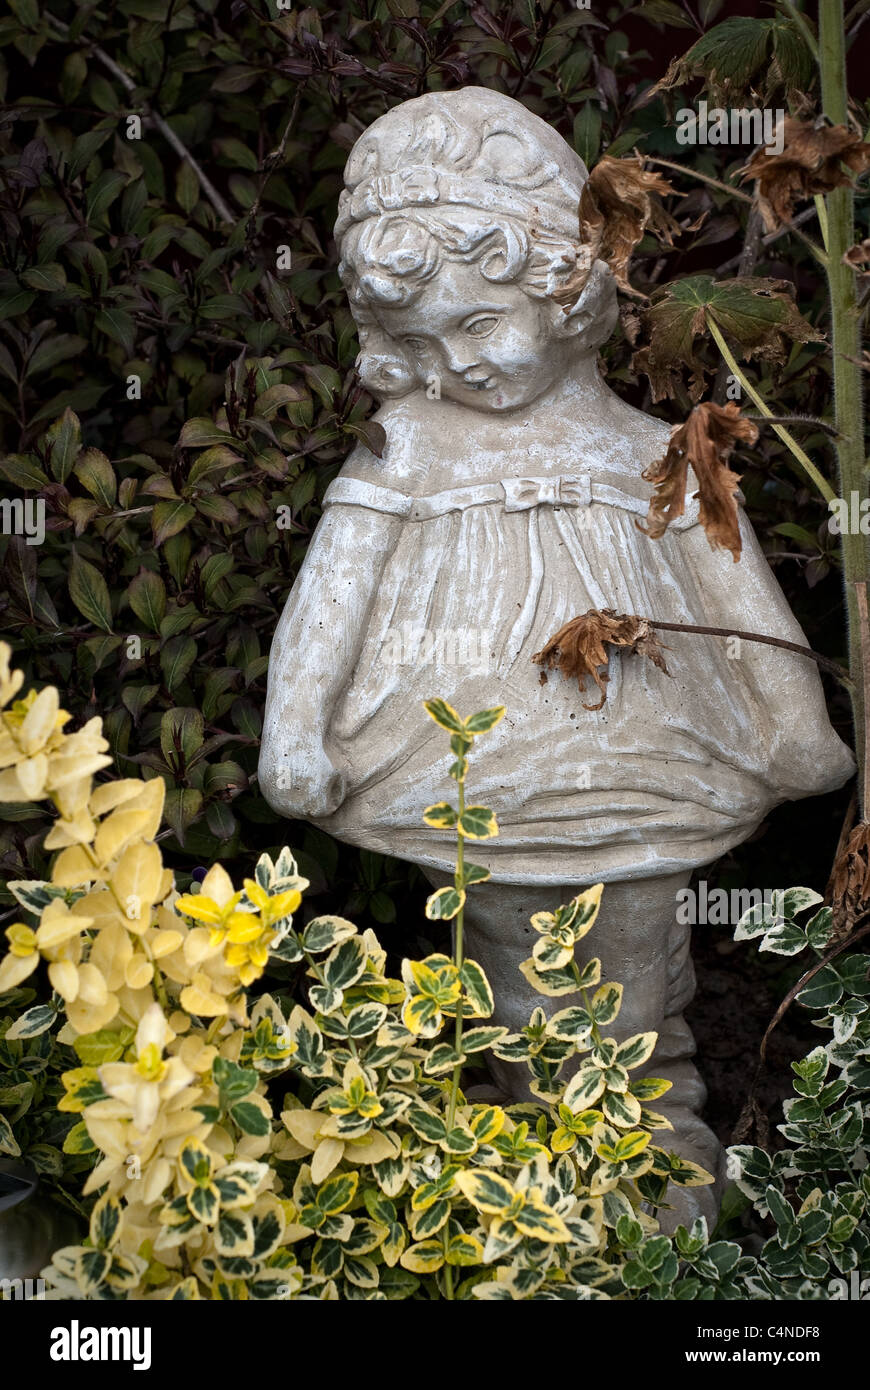 Eine steinerne Statue eines jungen Mädchens steht unter dem Laub eines vernachlässigten Garten Stockfoto